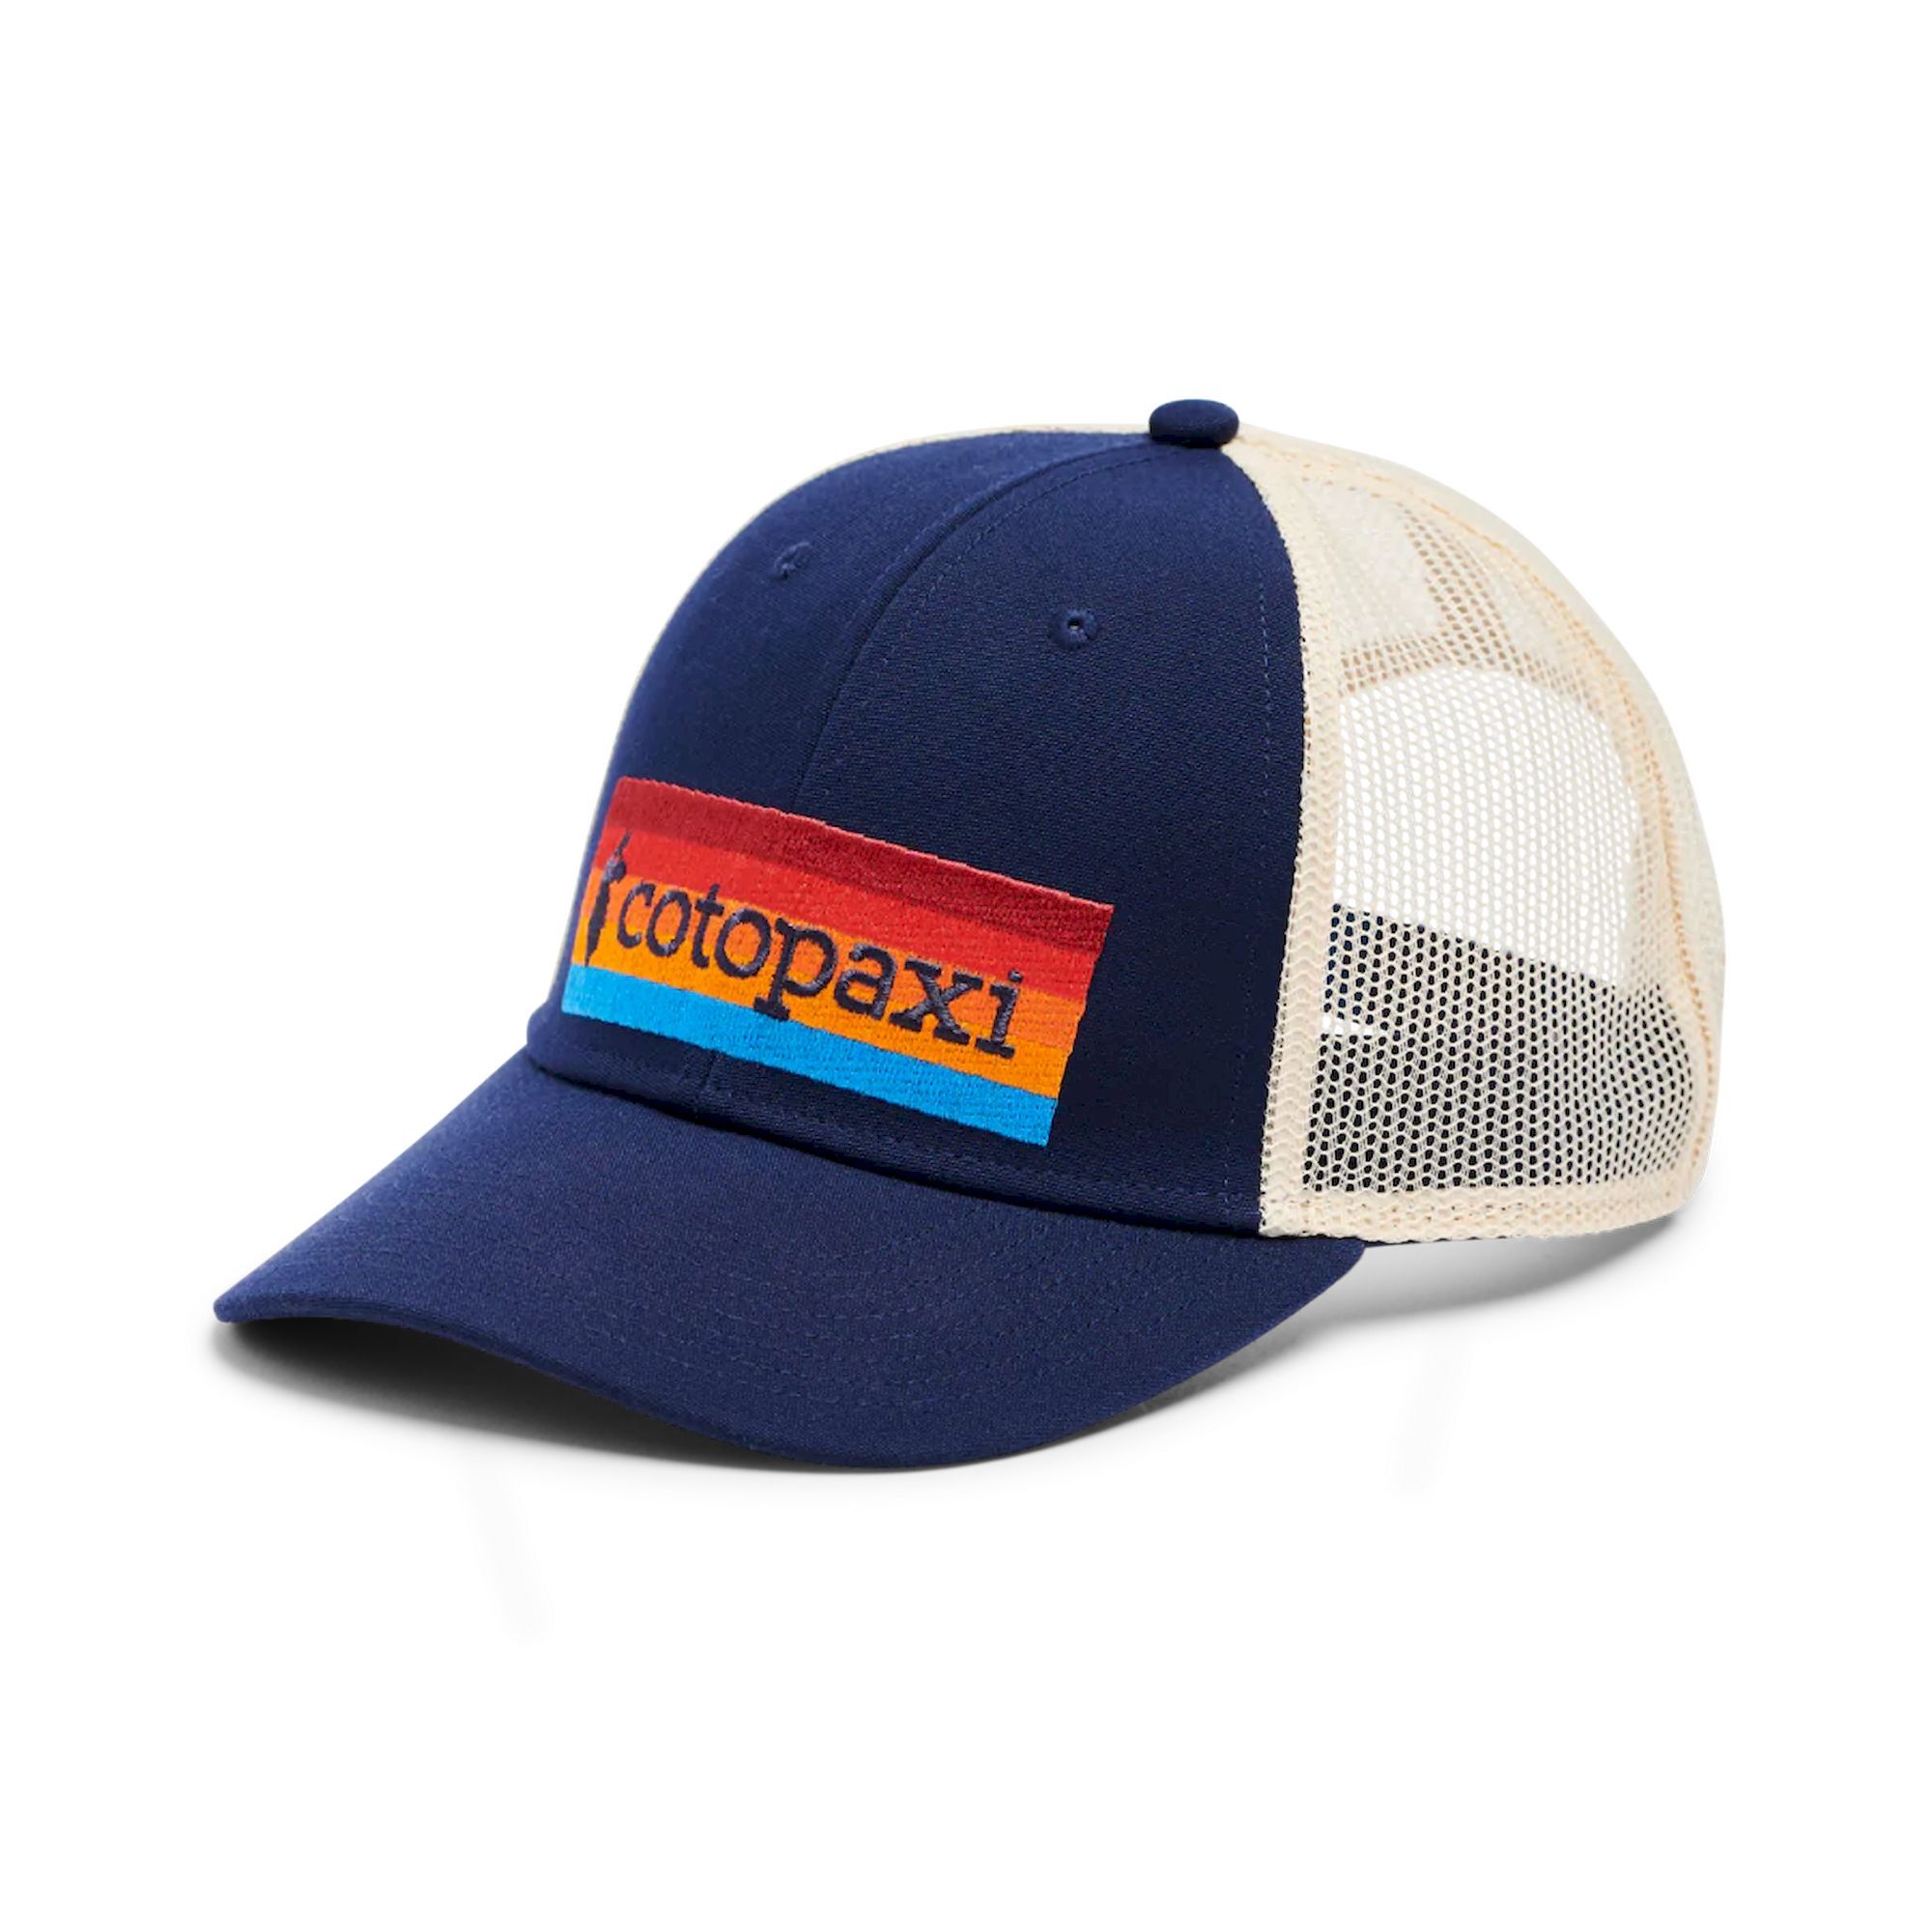 Cotopaxi On the Horizon Trucker Hat - Cappellino | Hardloop